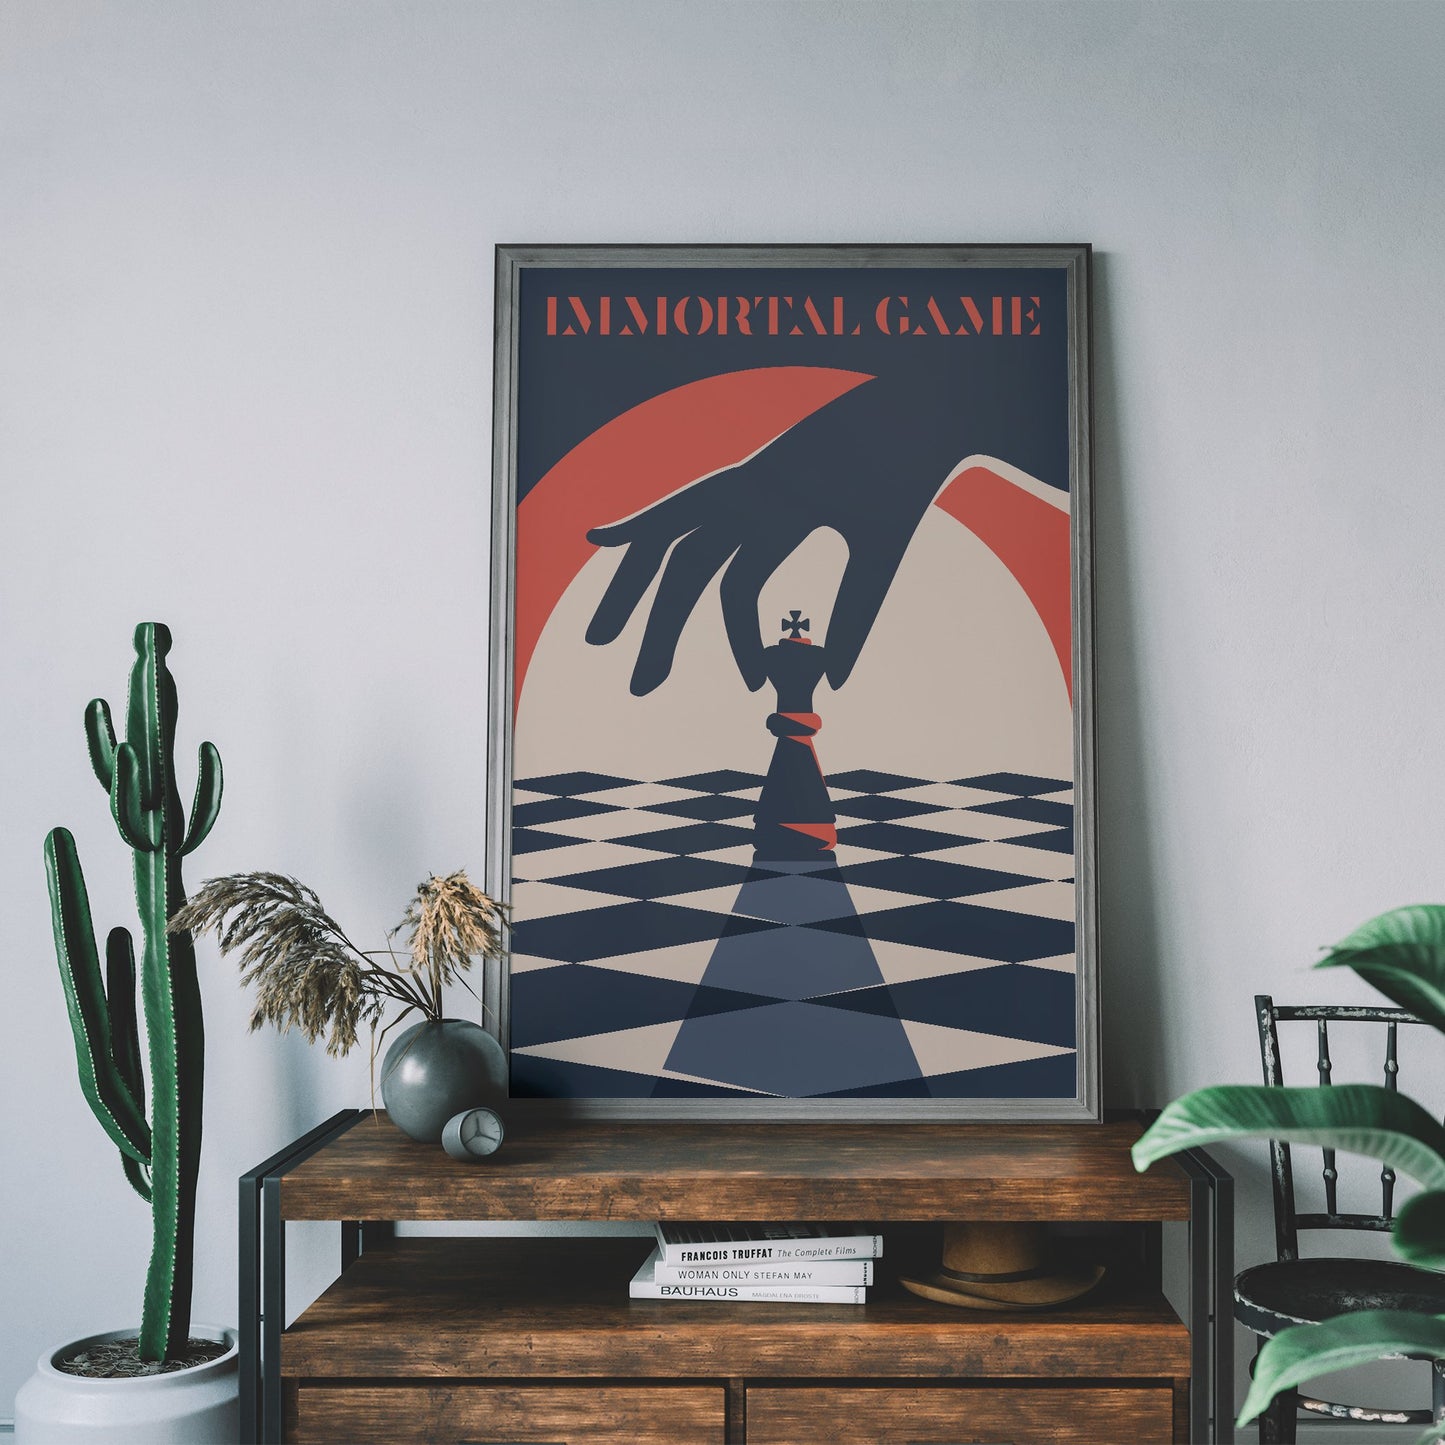 The Queen's Gambit Poster